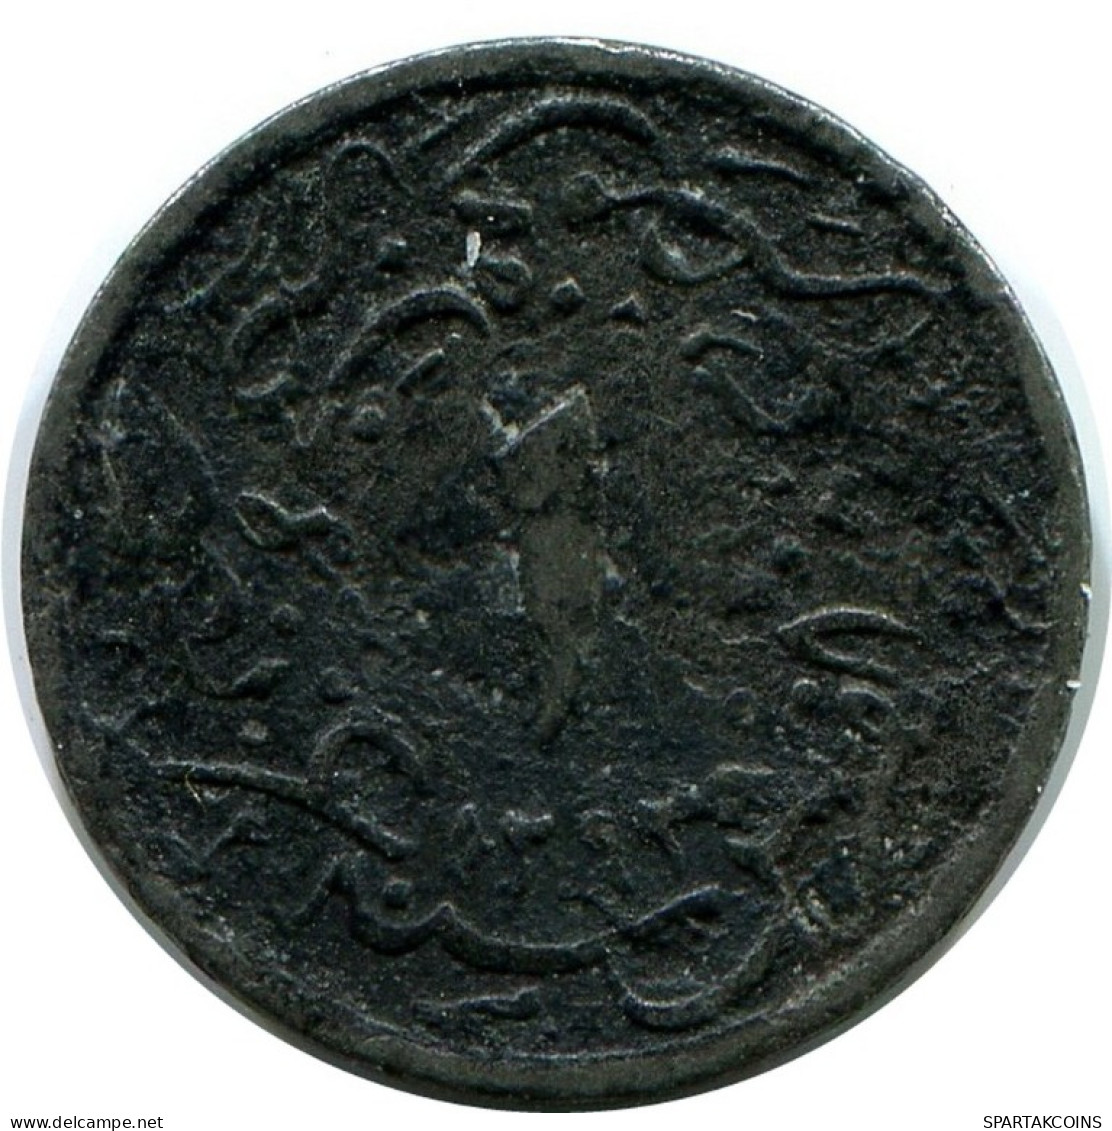 1/10 QIRSH 1899 ÄGYPTEN EGYPT Islamisch Münze #AK342.D.A - Aegypten